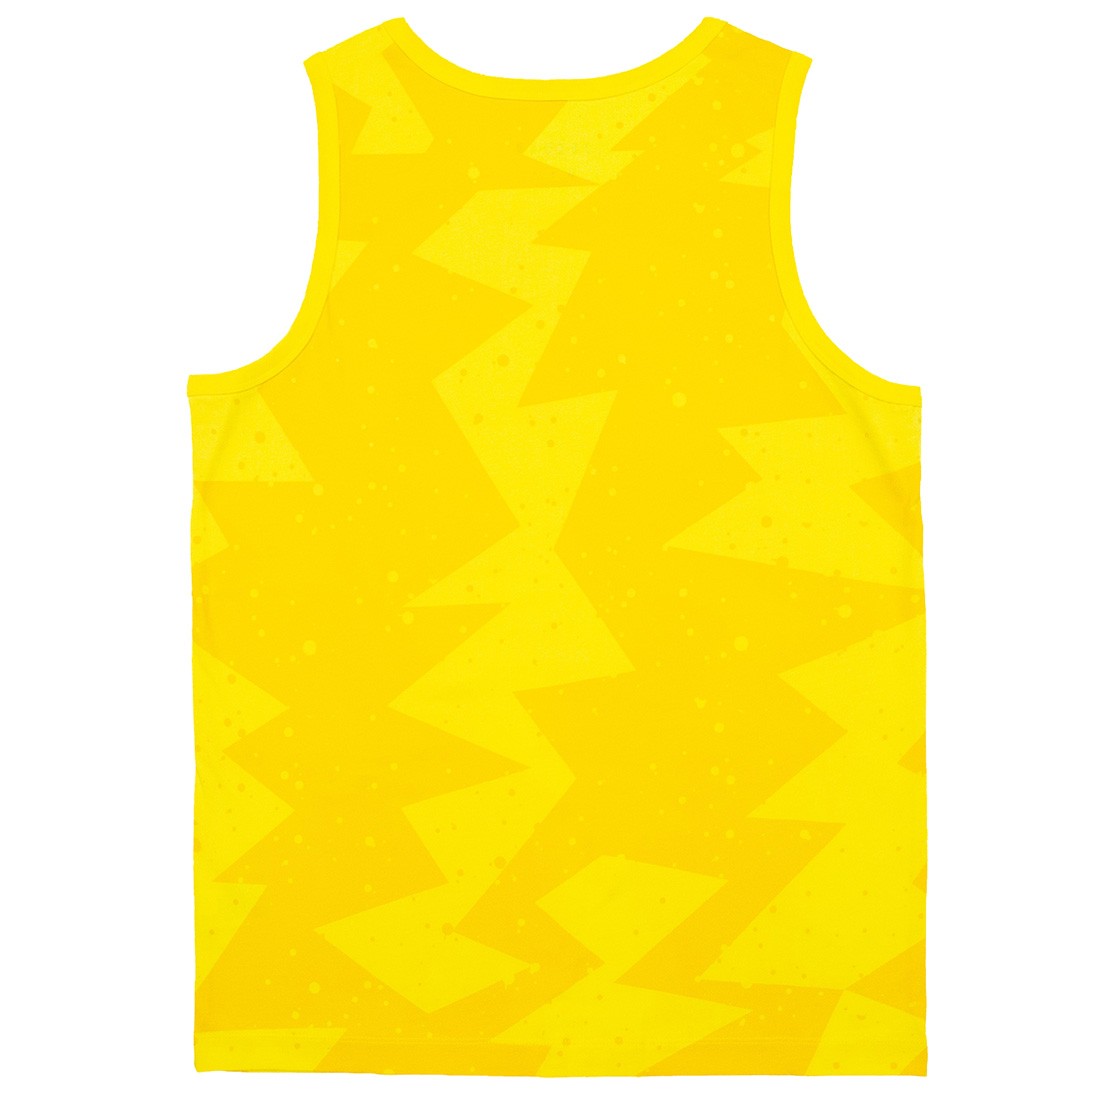 Jordan Men Printed Poolside Tank Top (amarillo)